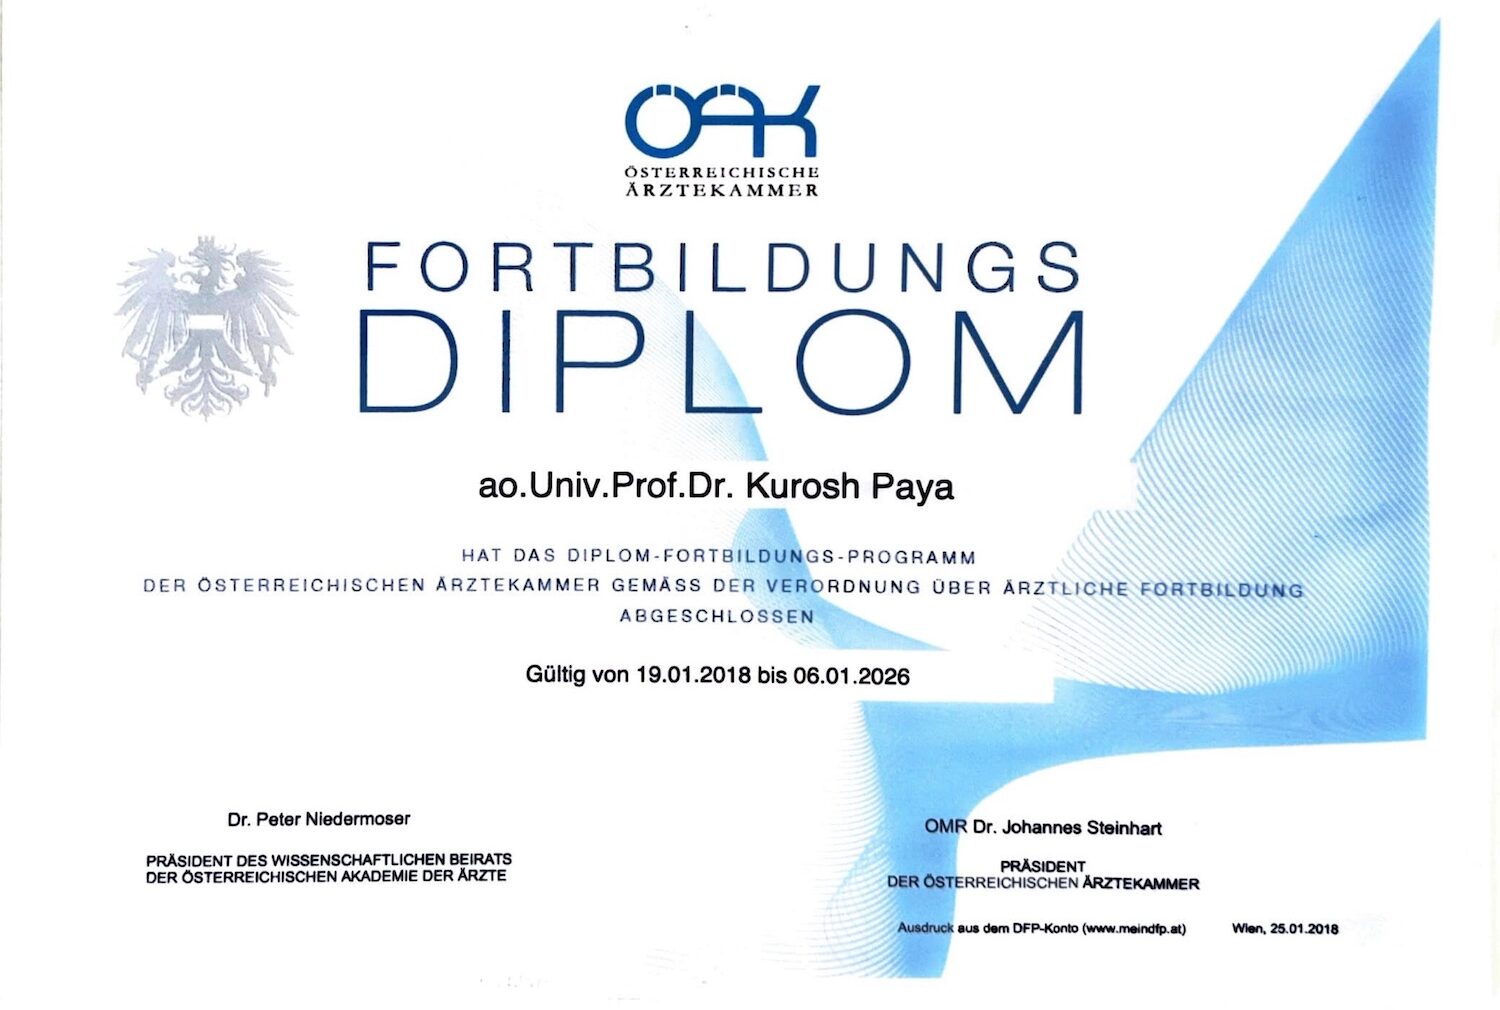 Fortbildung Diplom. Österreichische Arztekammer. Univ.Prof.Dr. Kurosh Paya